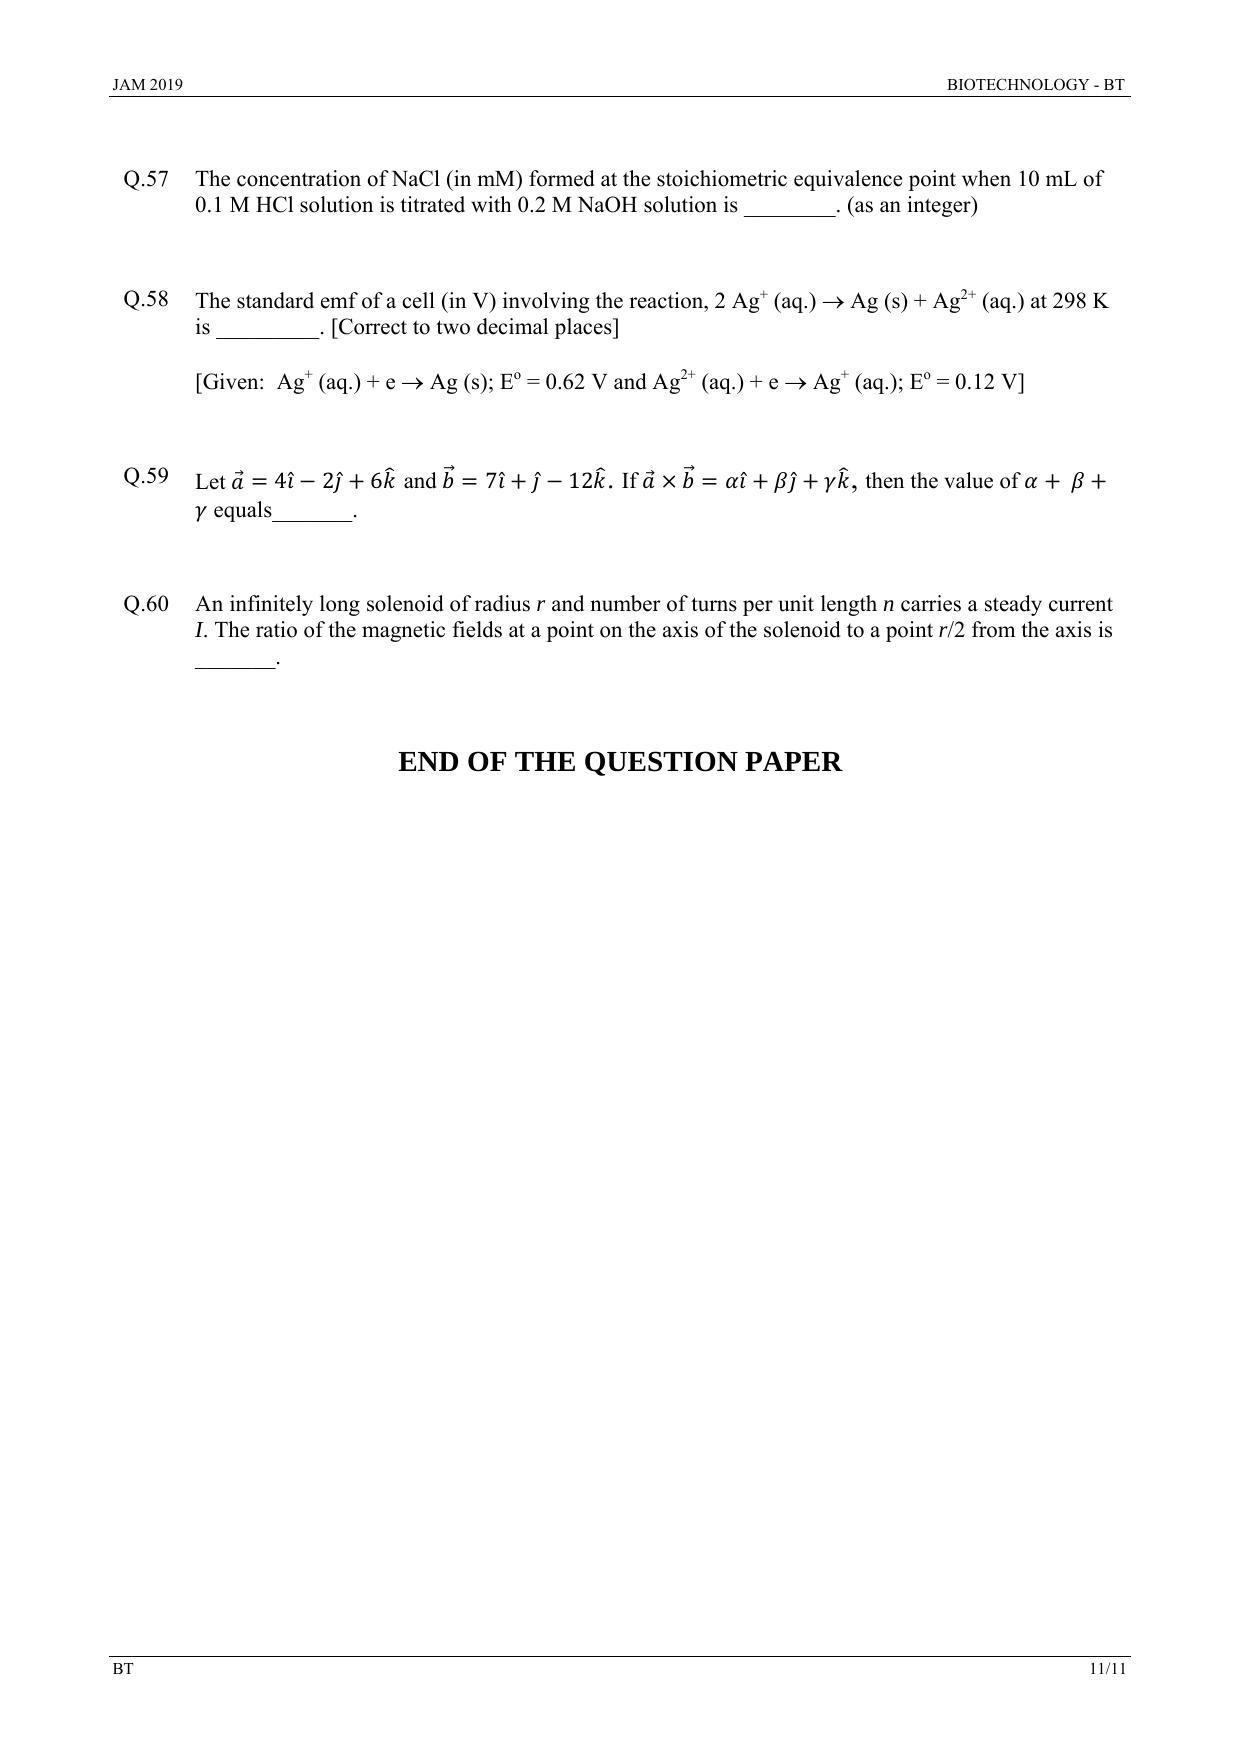 JAM 2019: BT Question Paper - Page 11